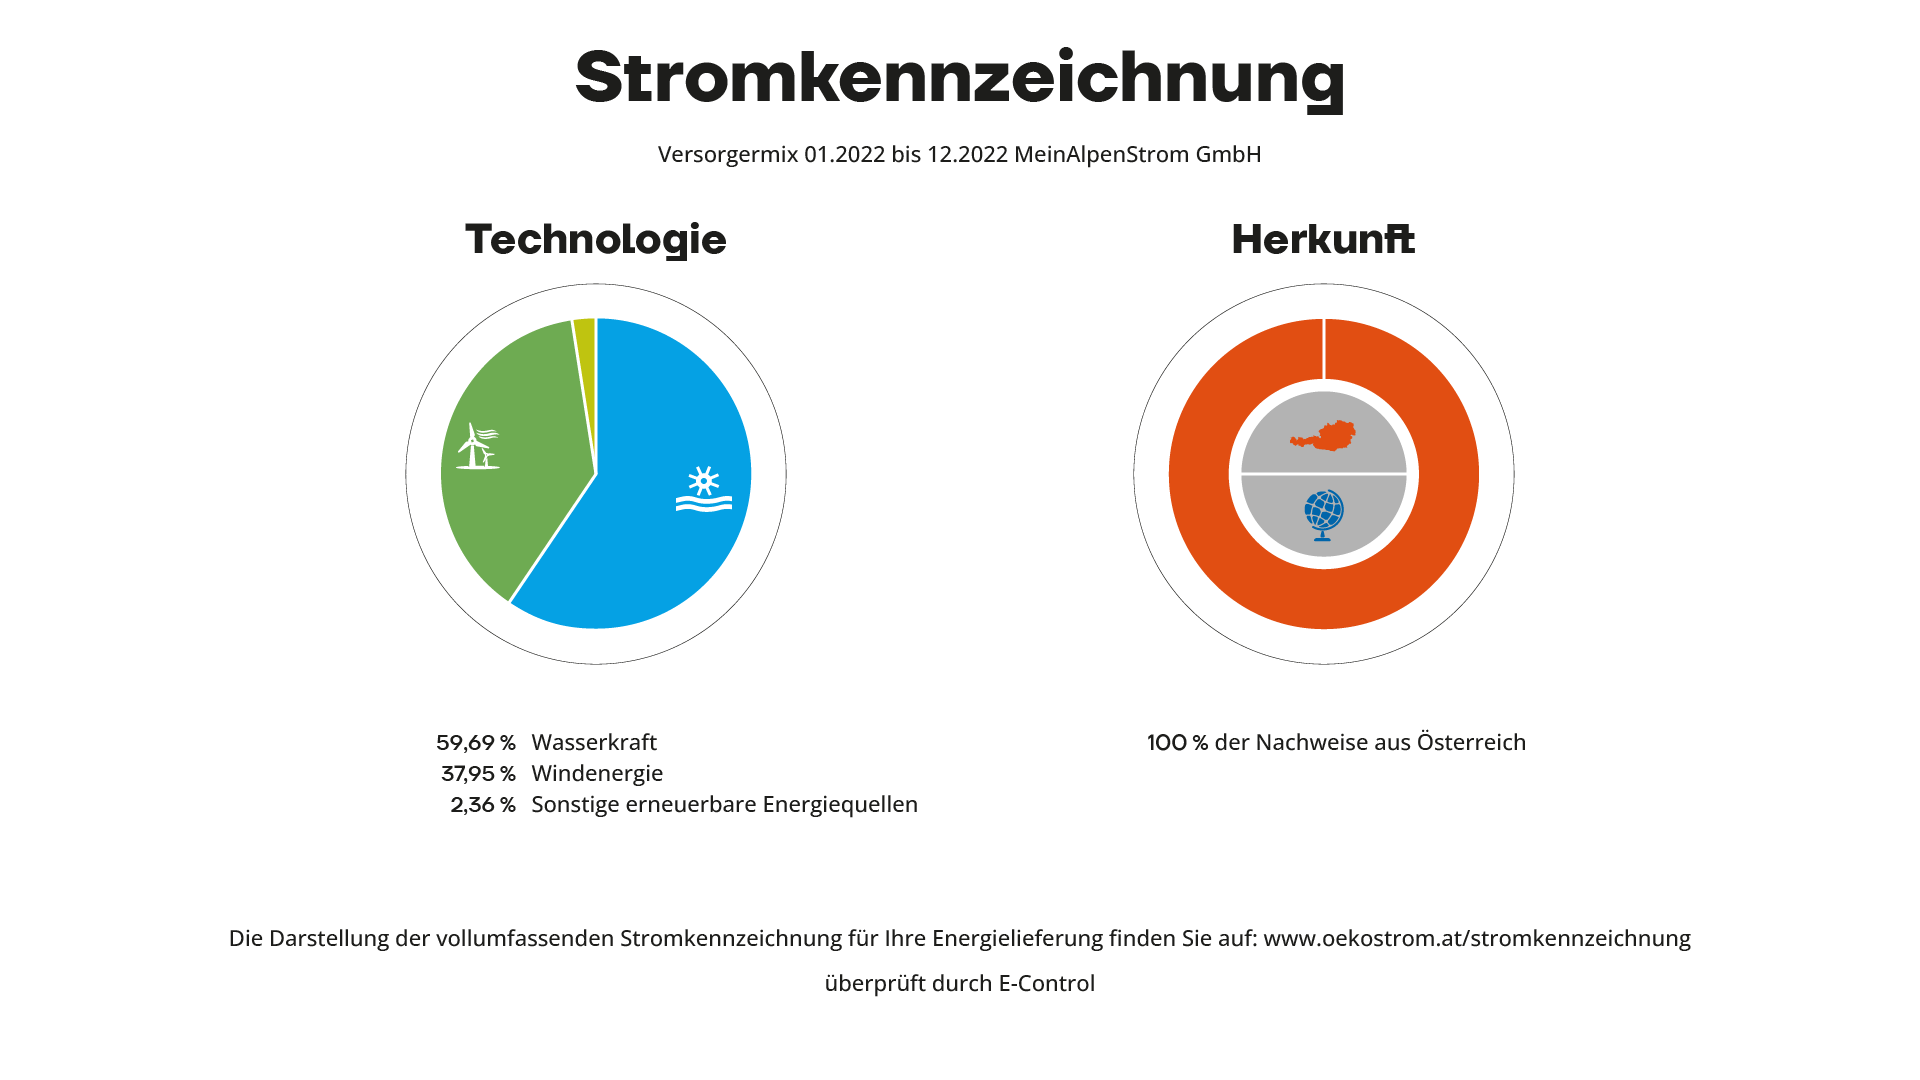 Primäre Stromkennzeichnung der MeinAlpenStrom GmbH Versorgermix 2022